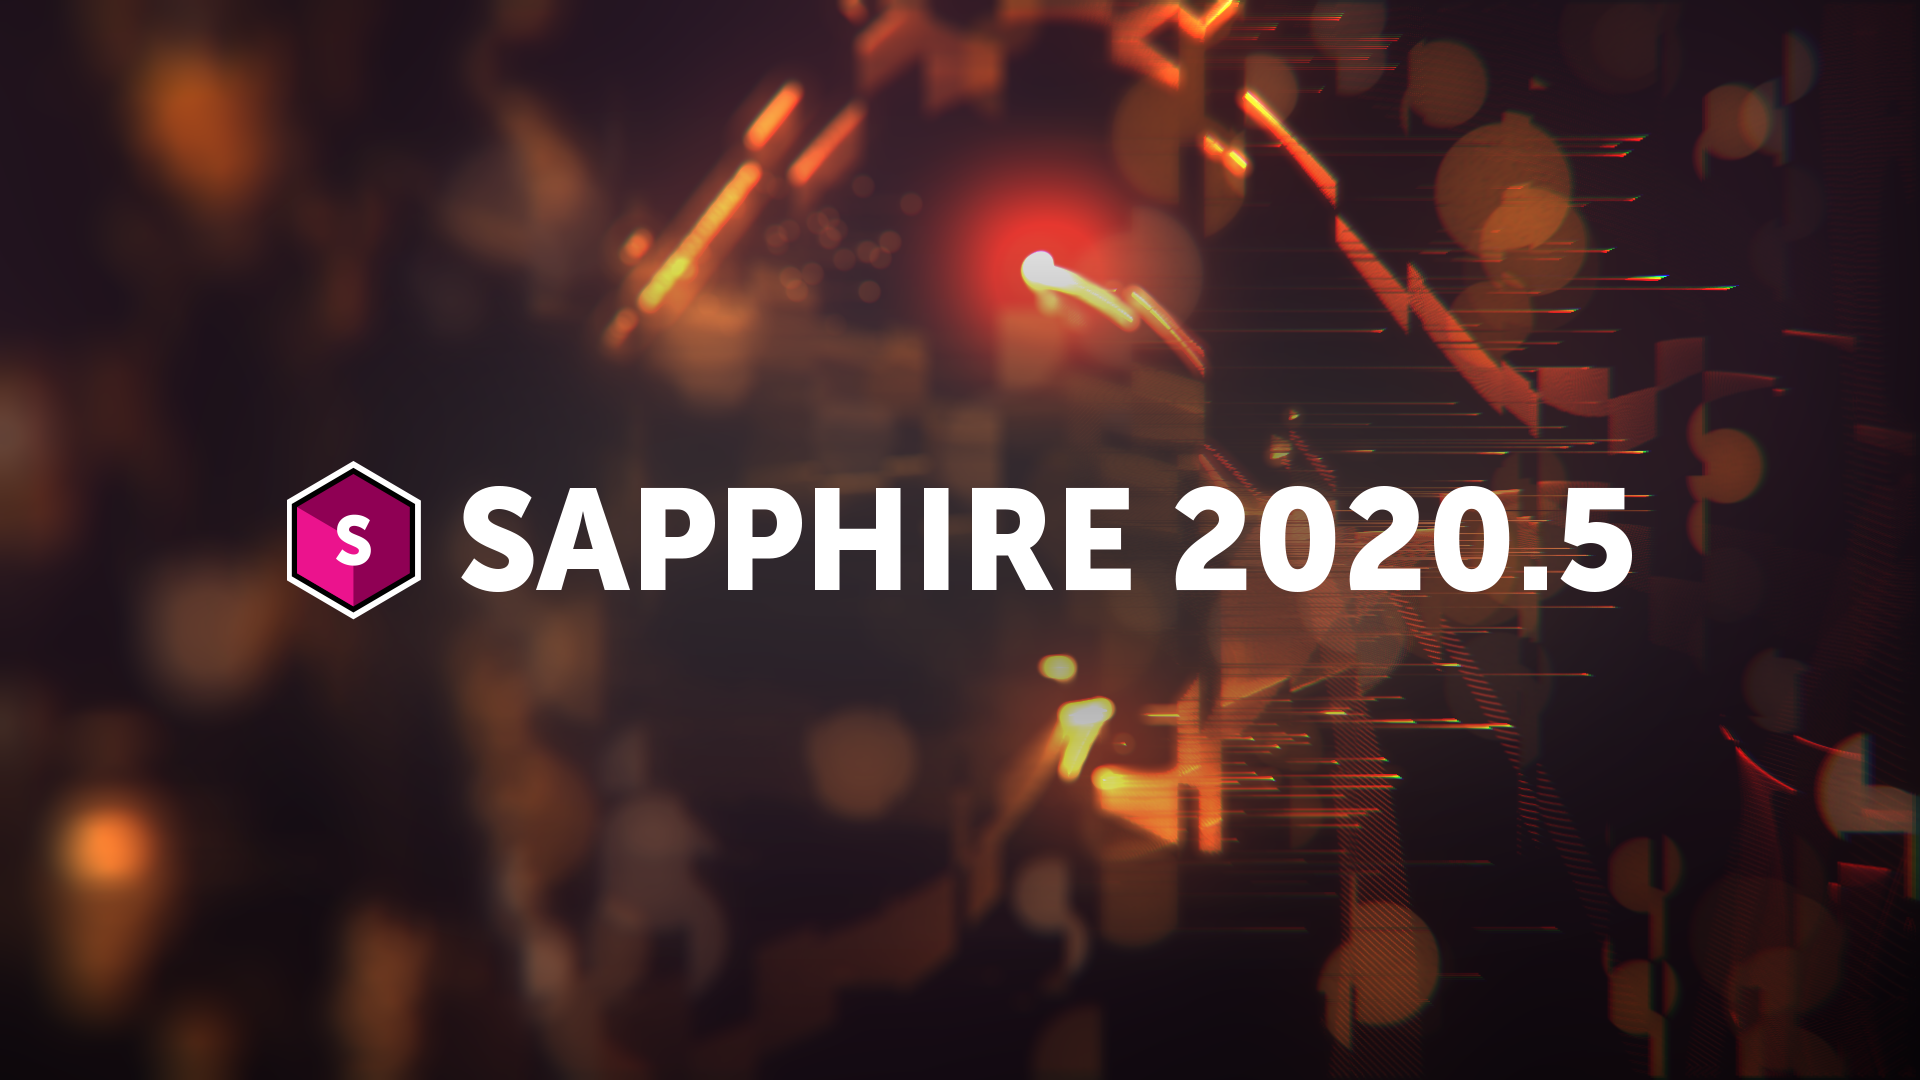 Sapphire 2020.5 hero image